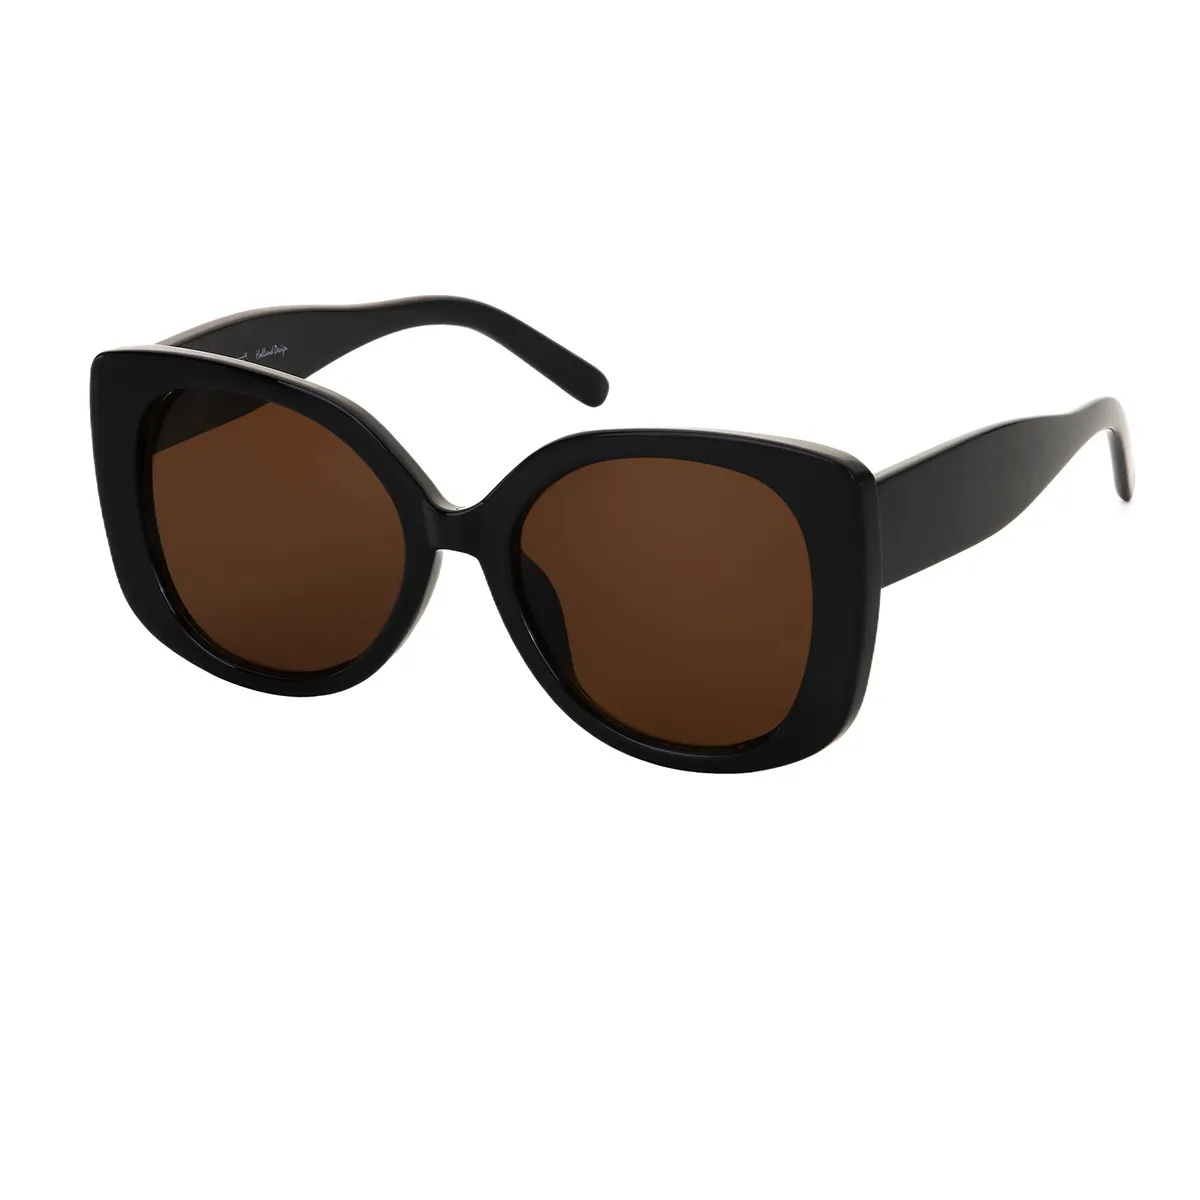 Gaki - Square Black Sunglasses for Women